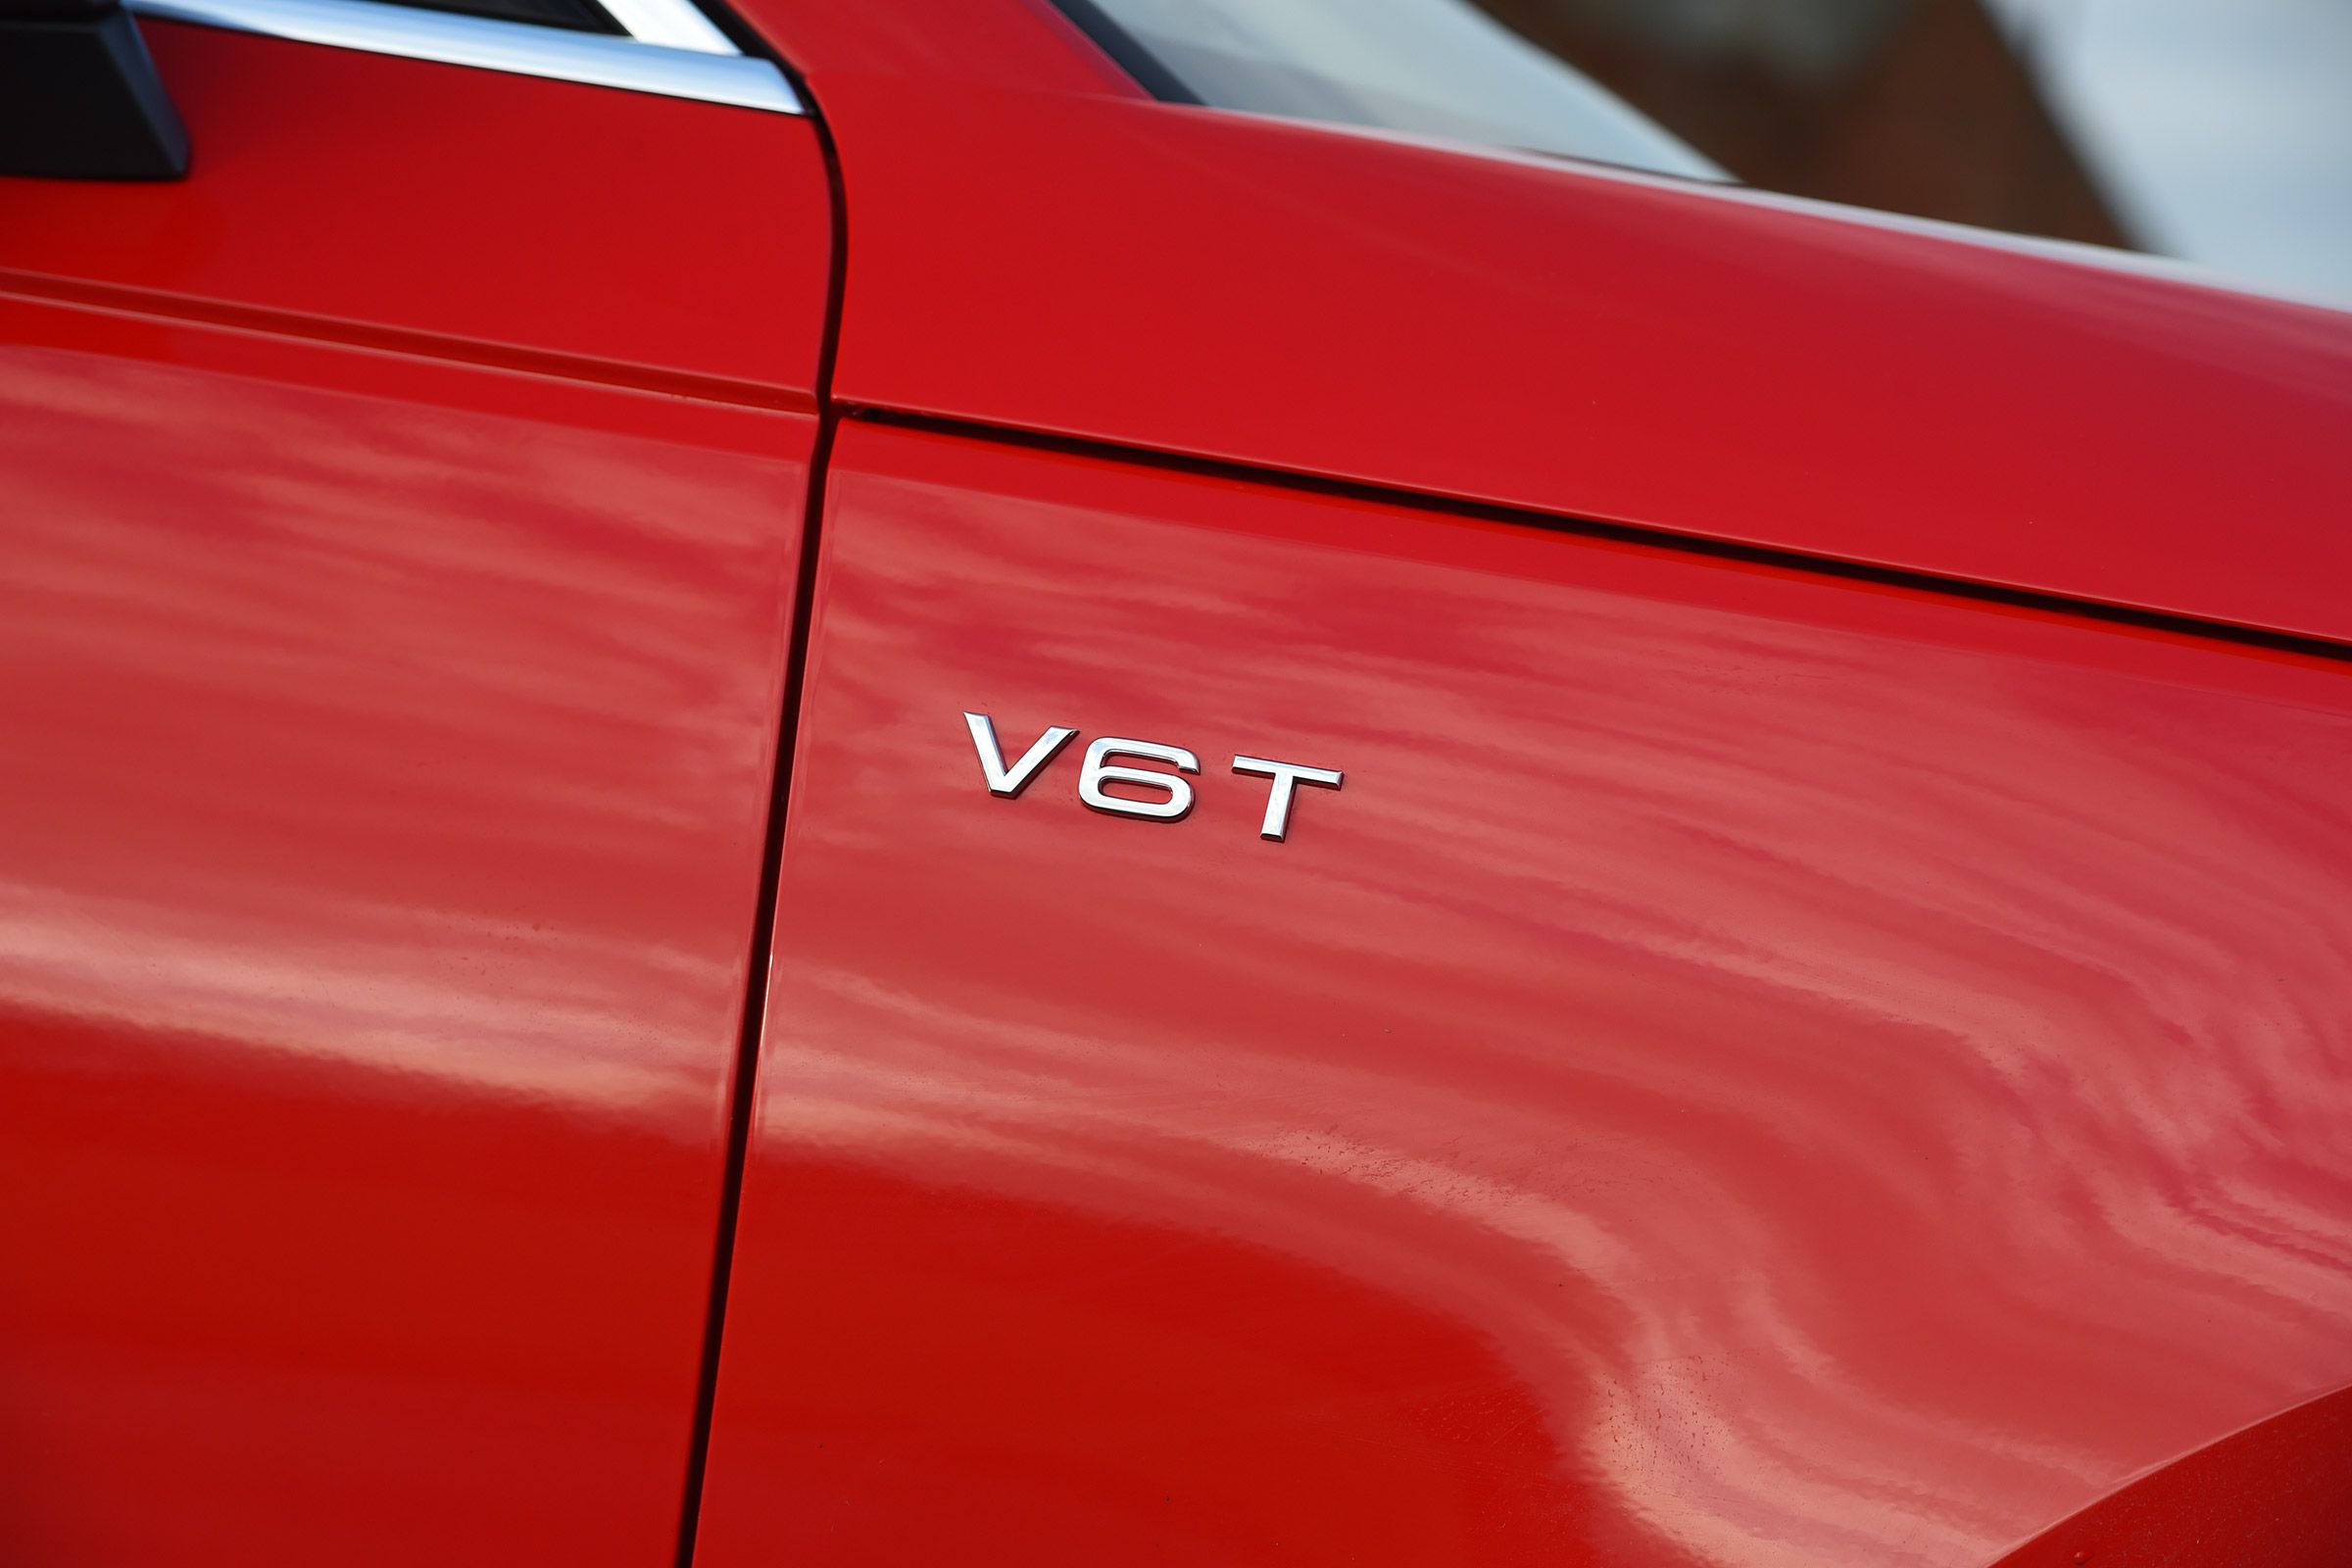 2017 Audi S4 Avant Exterior View Side Emblem (View 16 of 17)